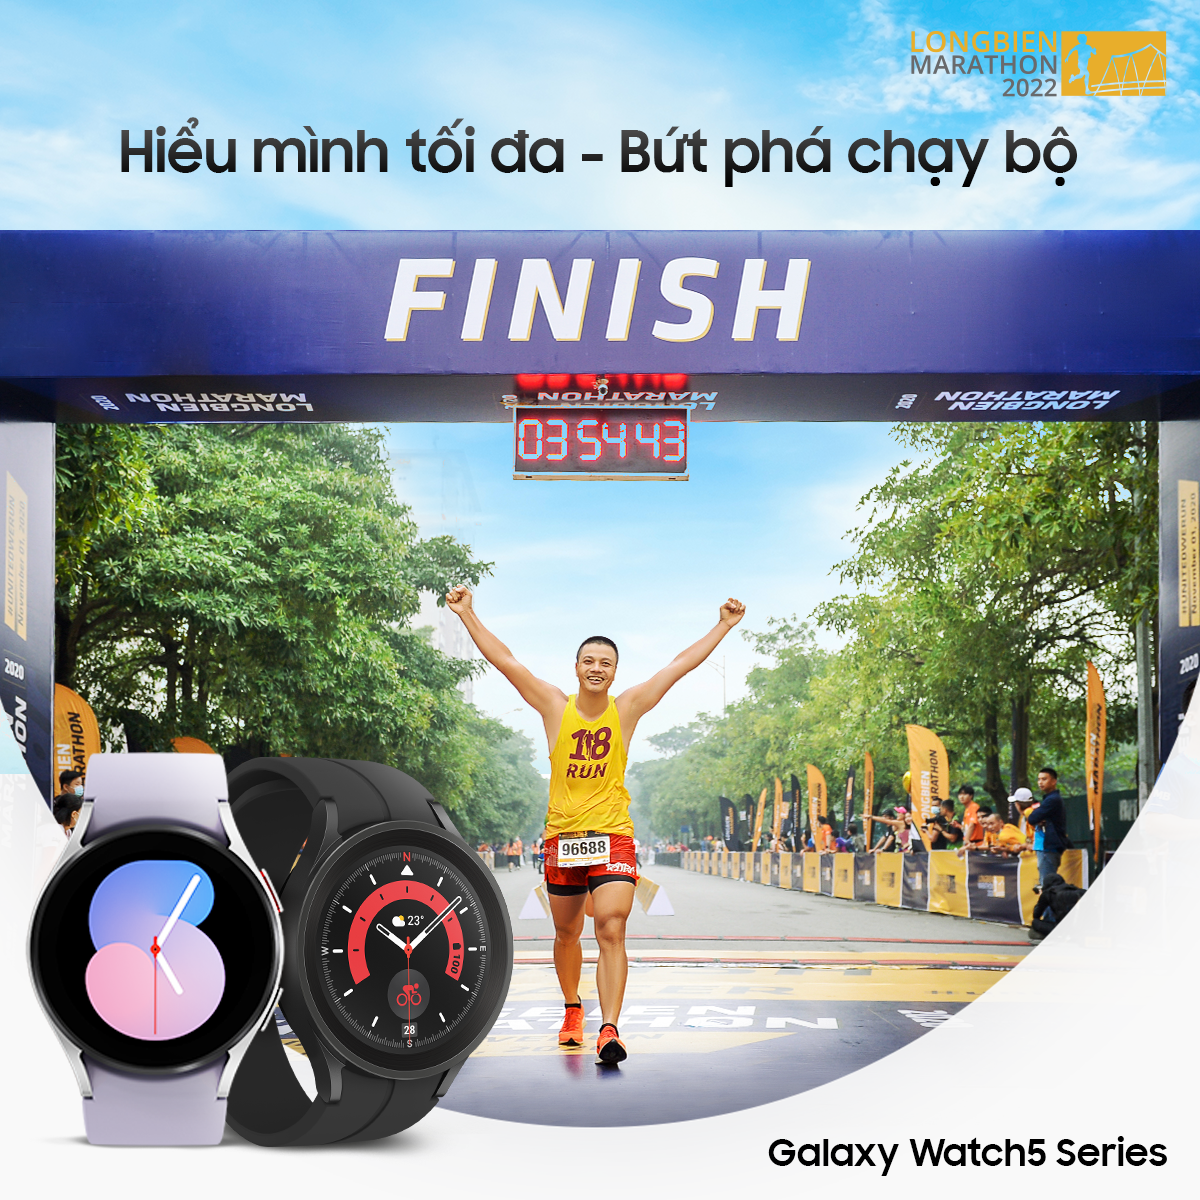 Galaxy Watch5 Series đồng hành cùng người dùng chinh phục giải chạy Long Biên Marathon 2022 - Ảnh 1.